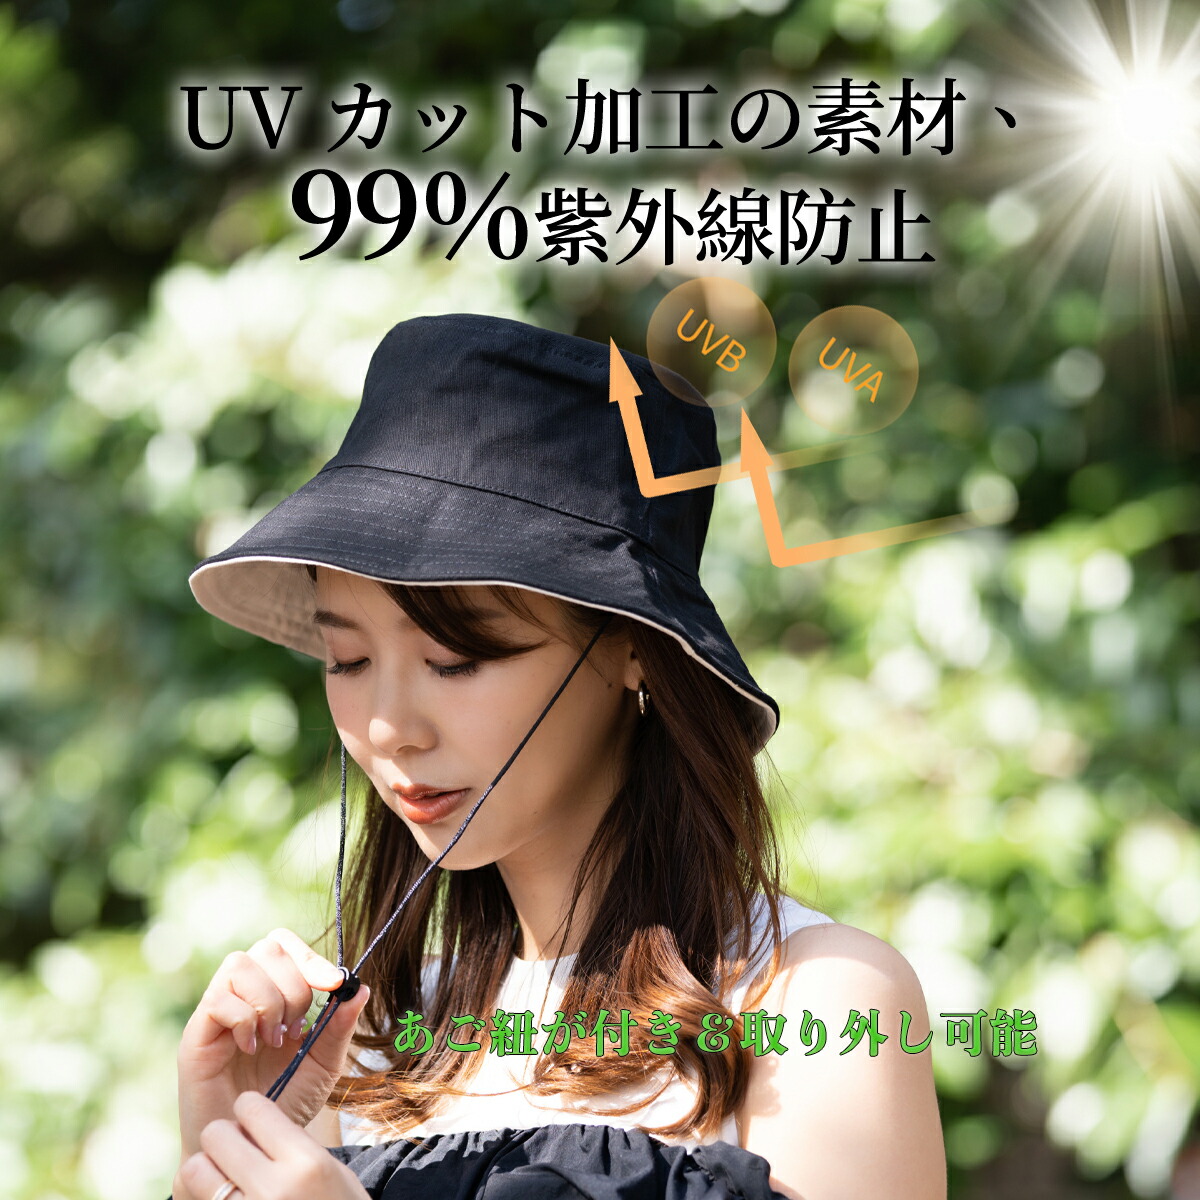 超大特価 リバーシブルハットつば広 紫外線対策 帽子 レディース UVカット